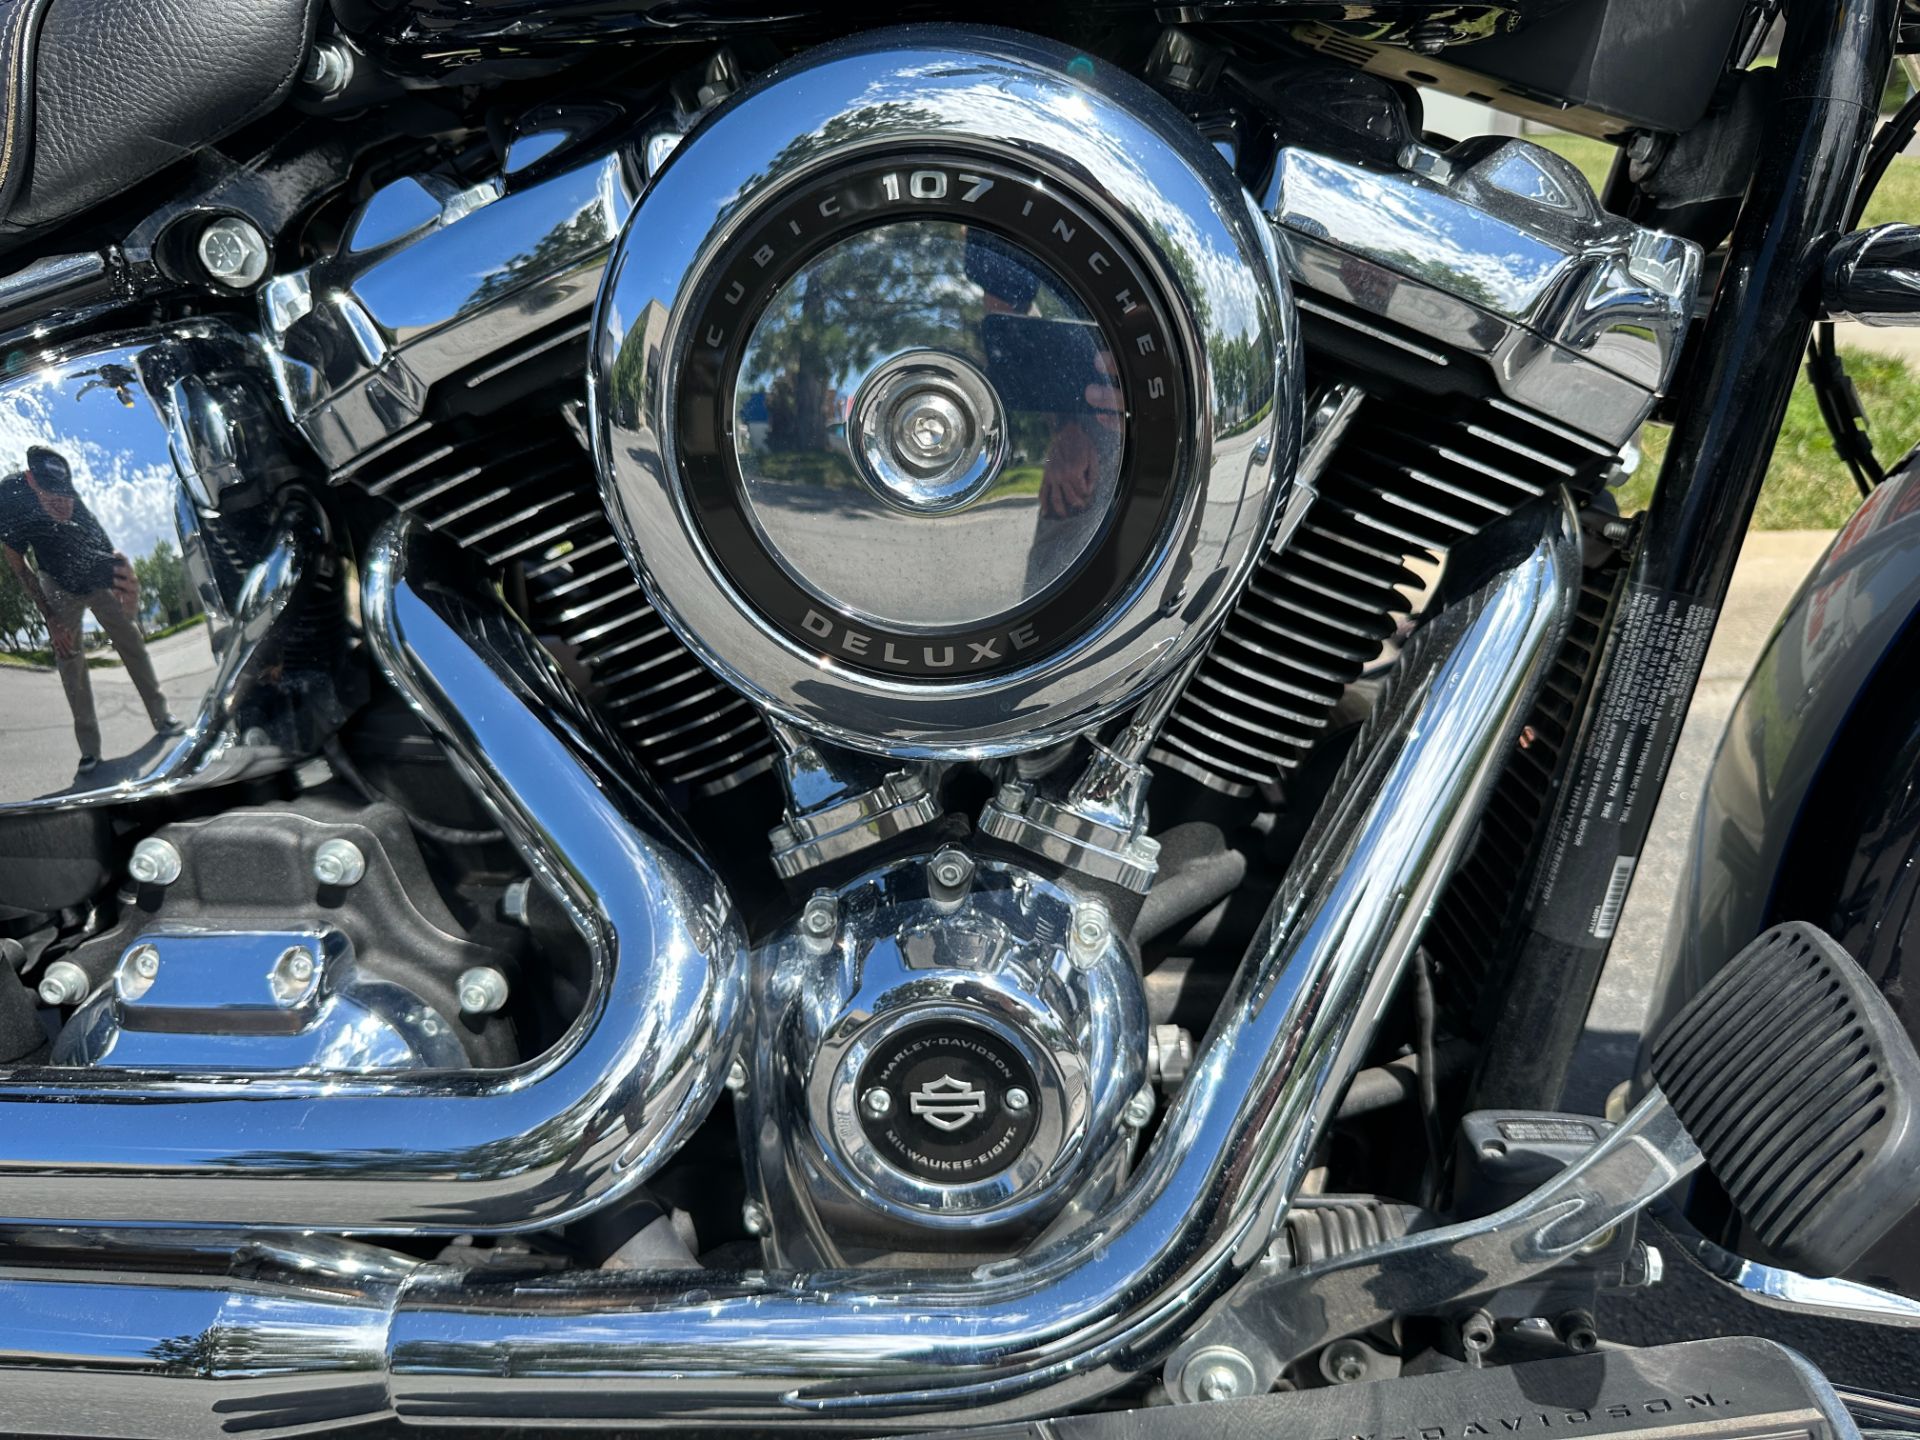 2019 Harley-Davidson Deluxe in Sandy, Utah - Photo 4